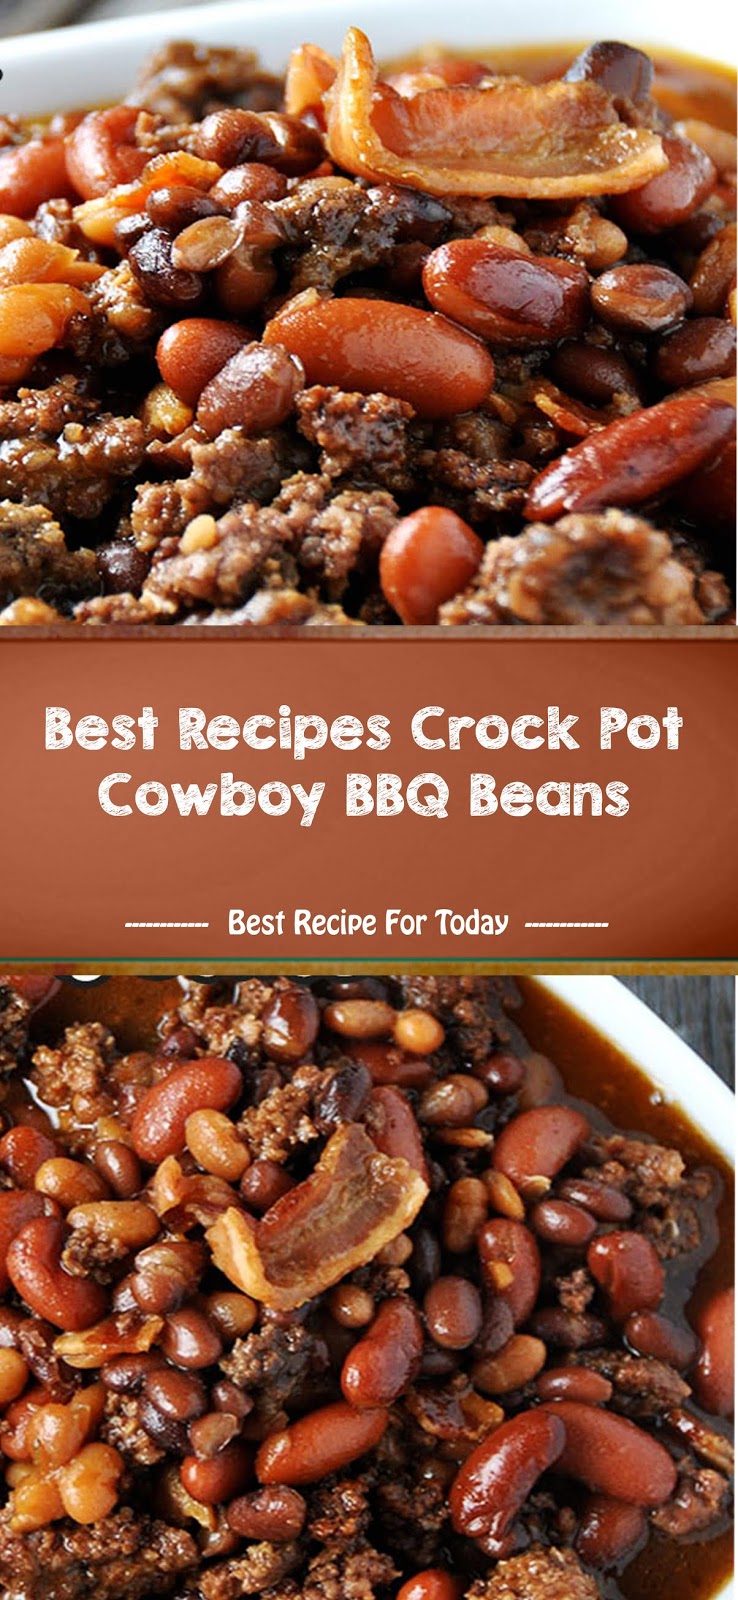 Best Recipes Crock Pot Cowboy BBQ Beans | Healthyrecipes-04